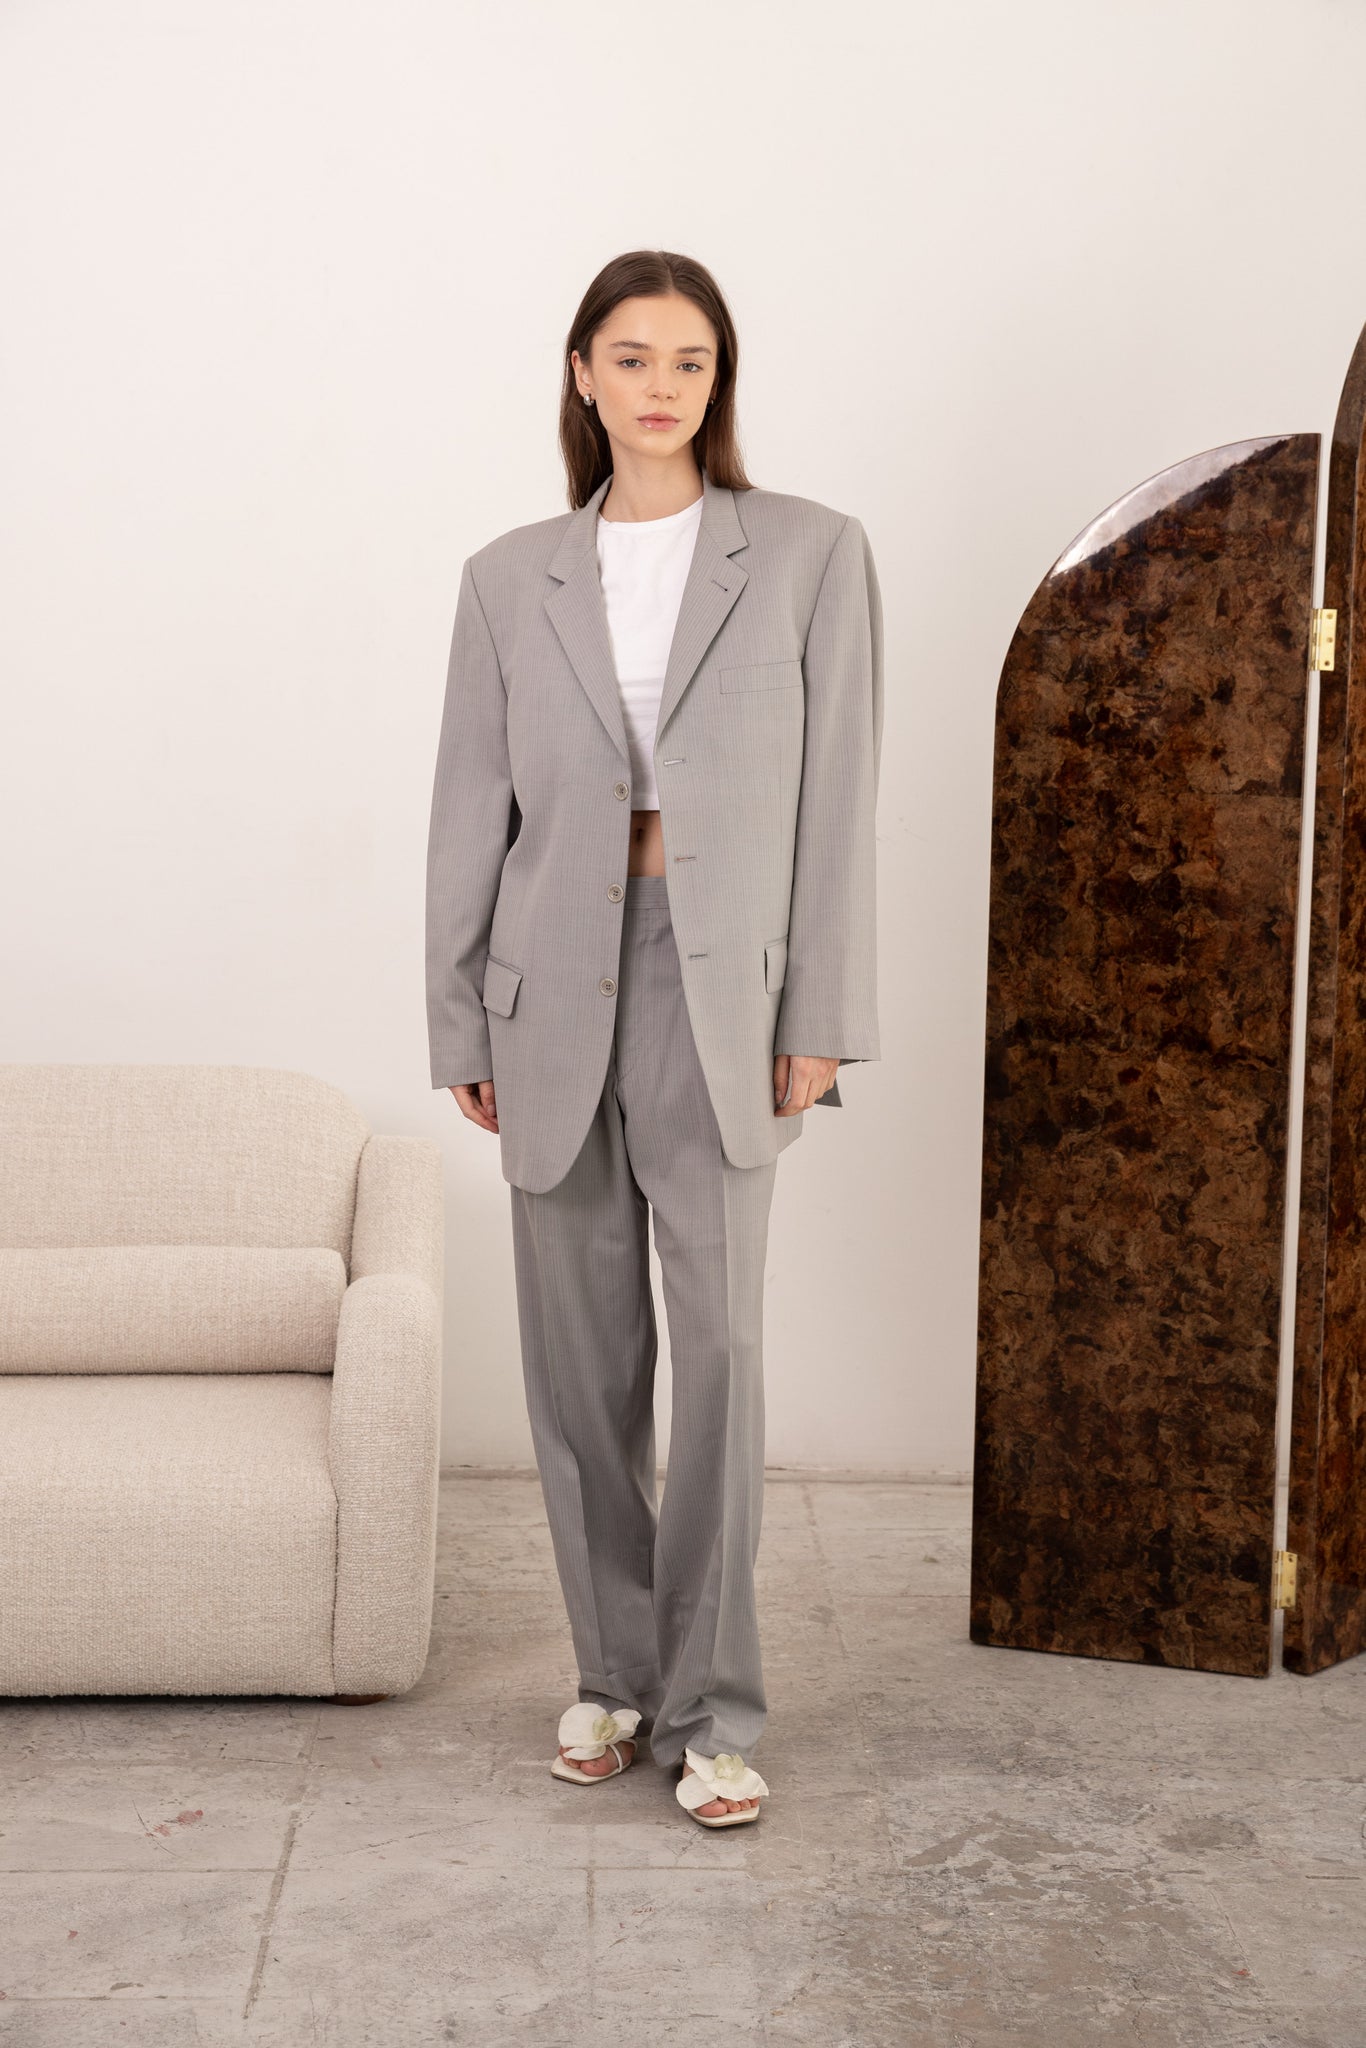 Vintage Christian Dior pale grey suit